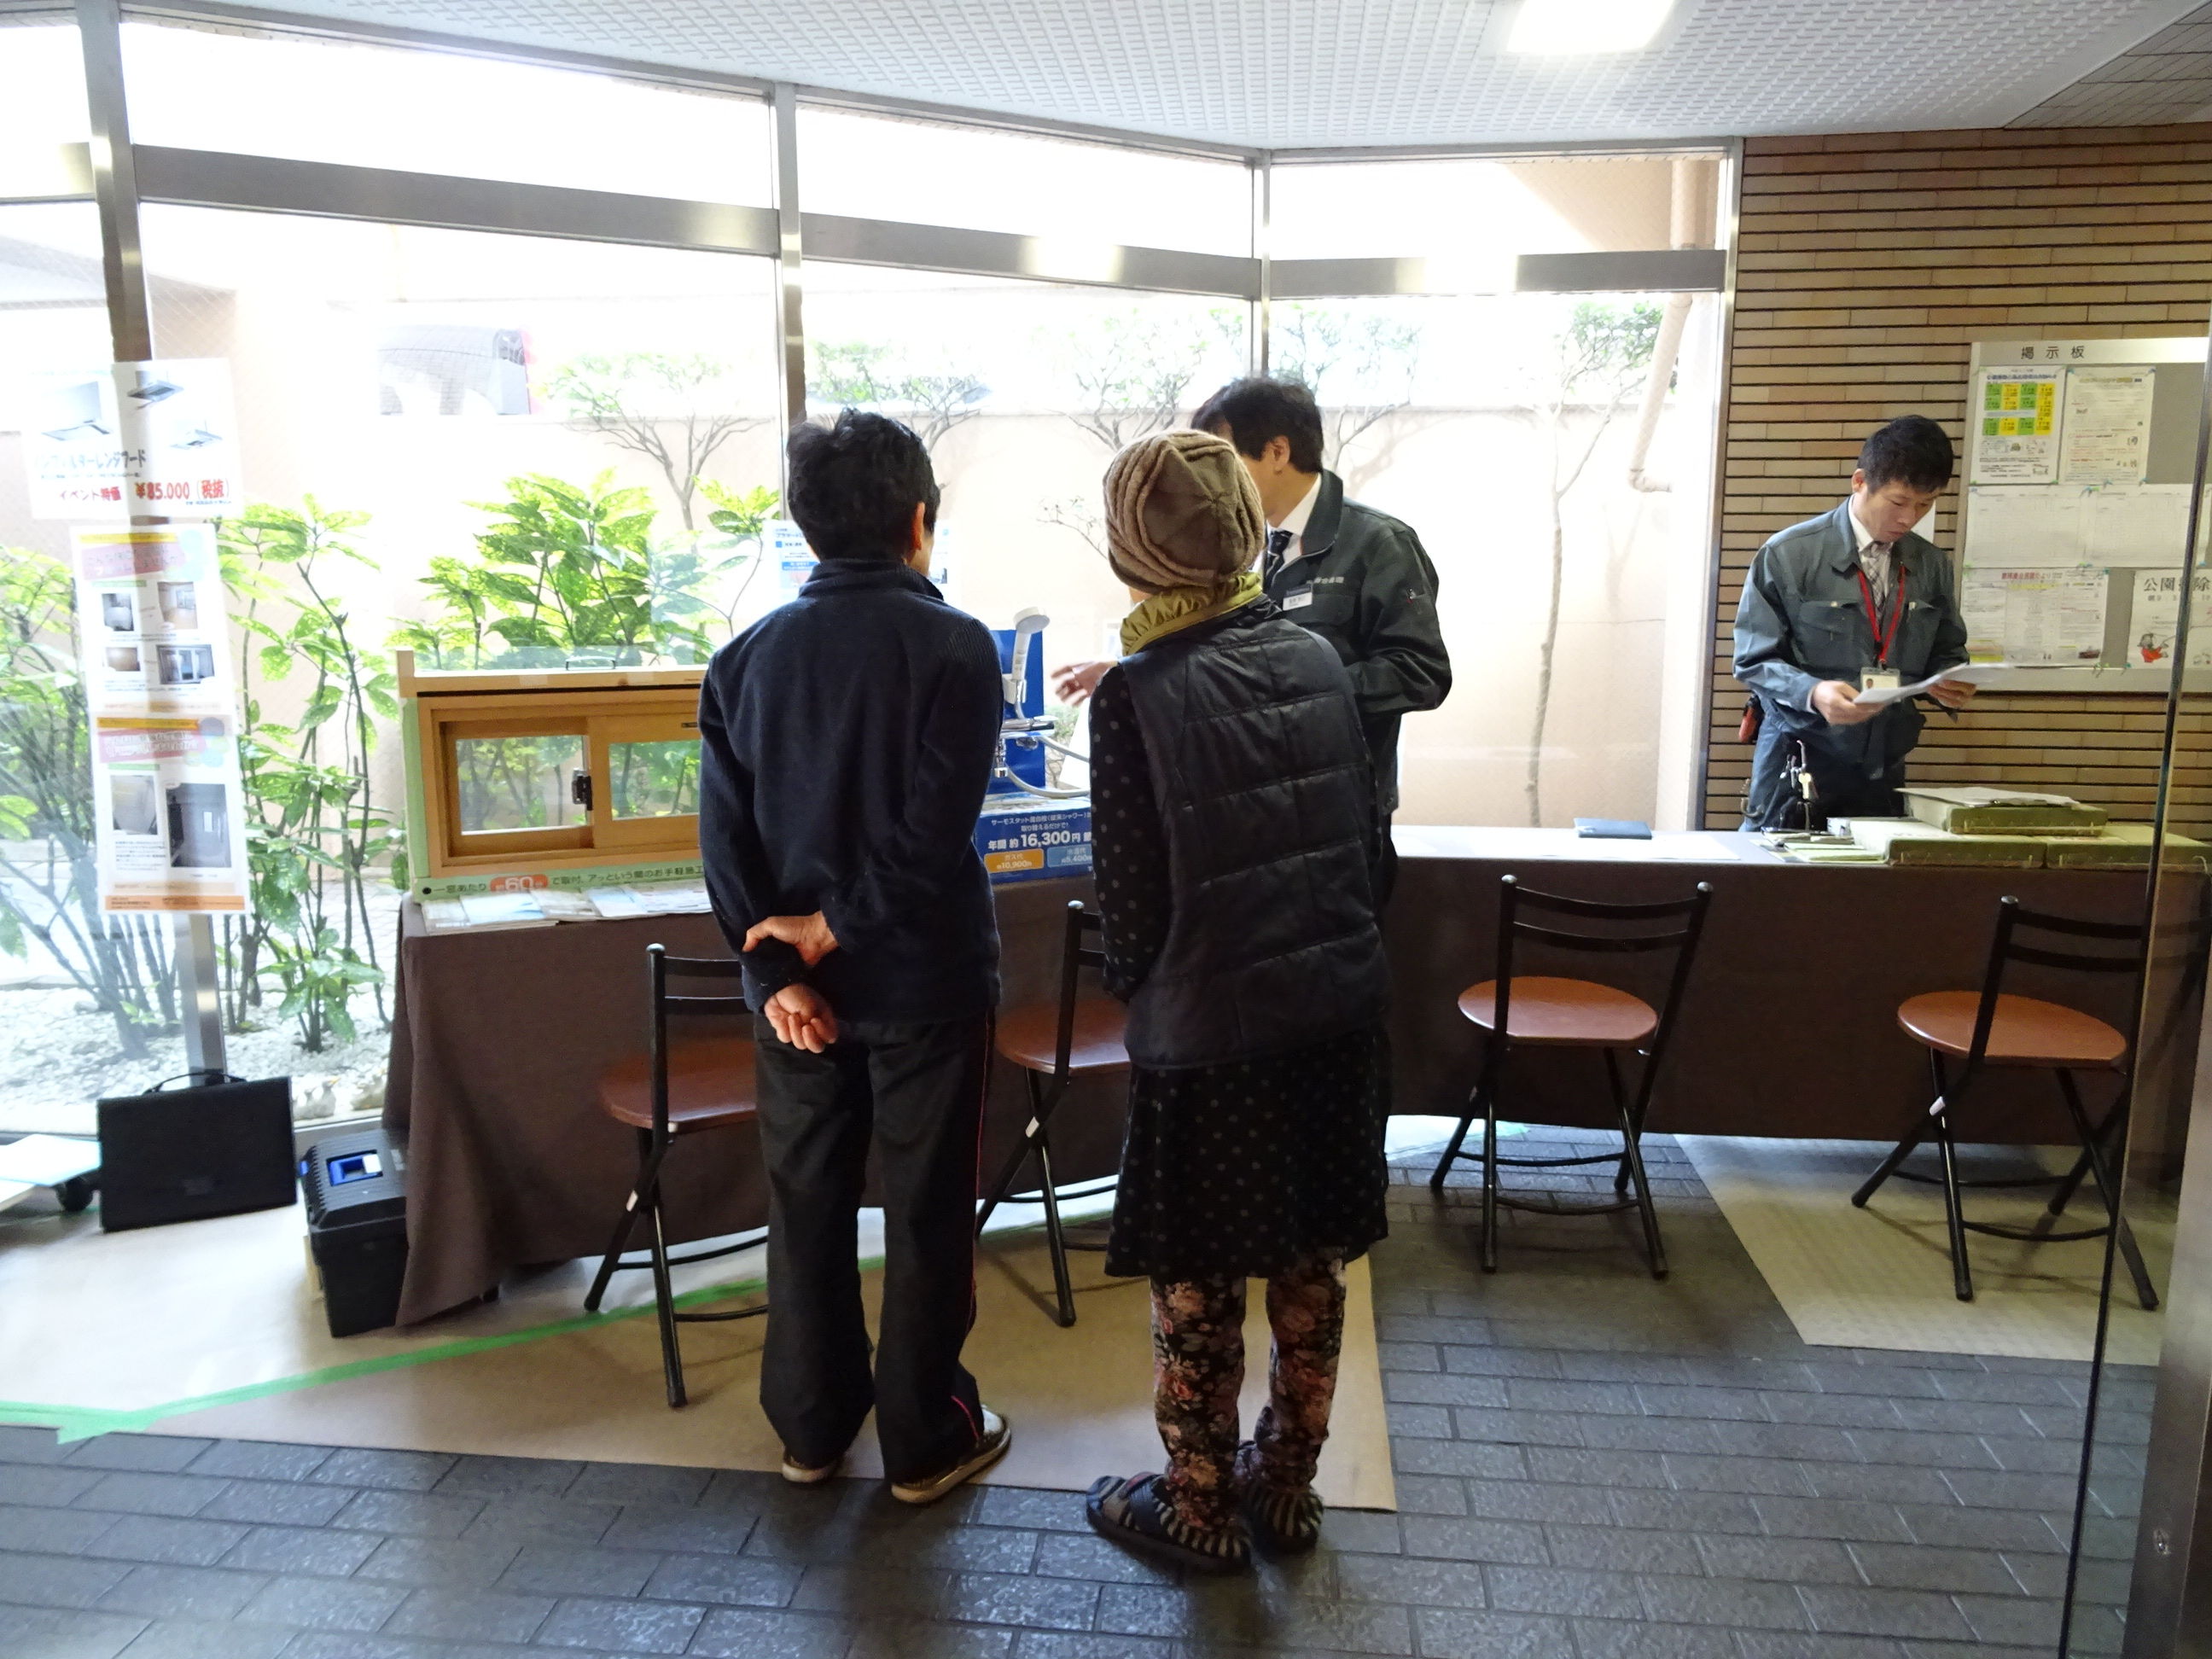 http://www.sin-ei-kanri.co.jp/event/images/002.JPG